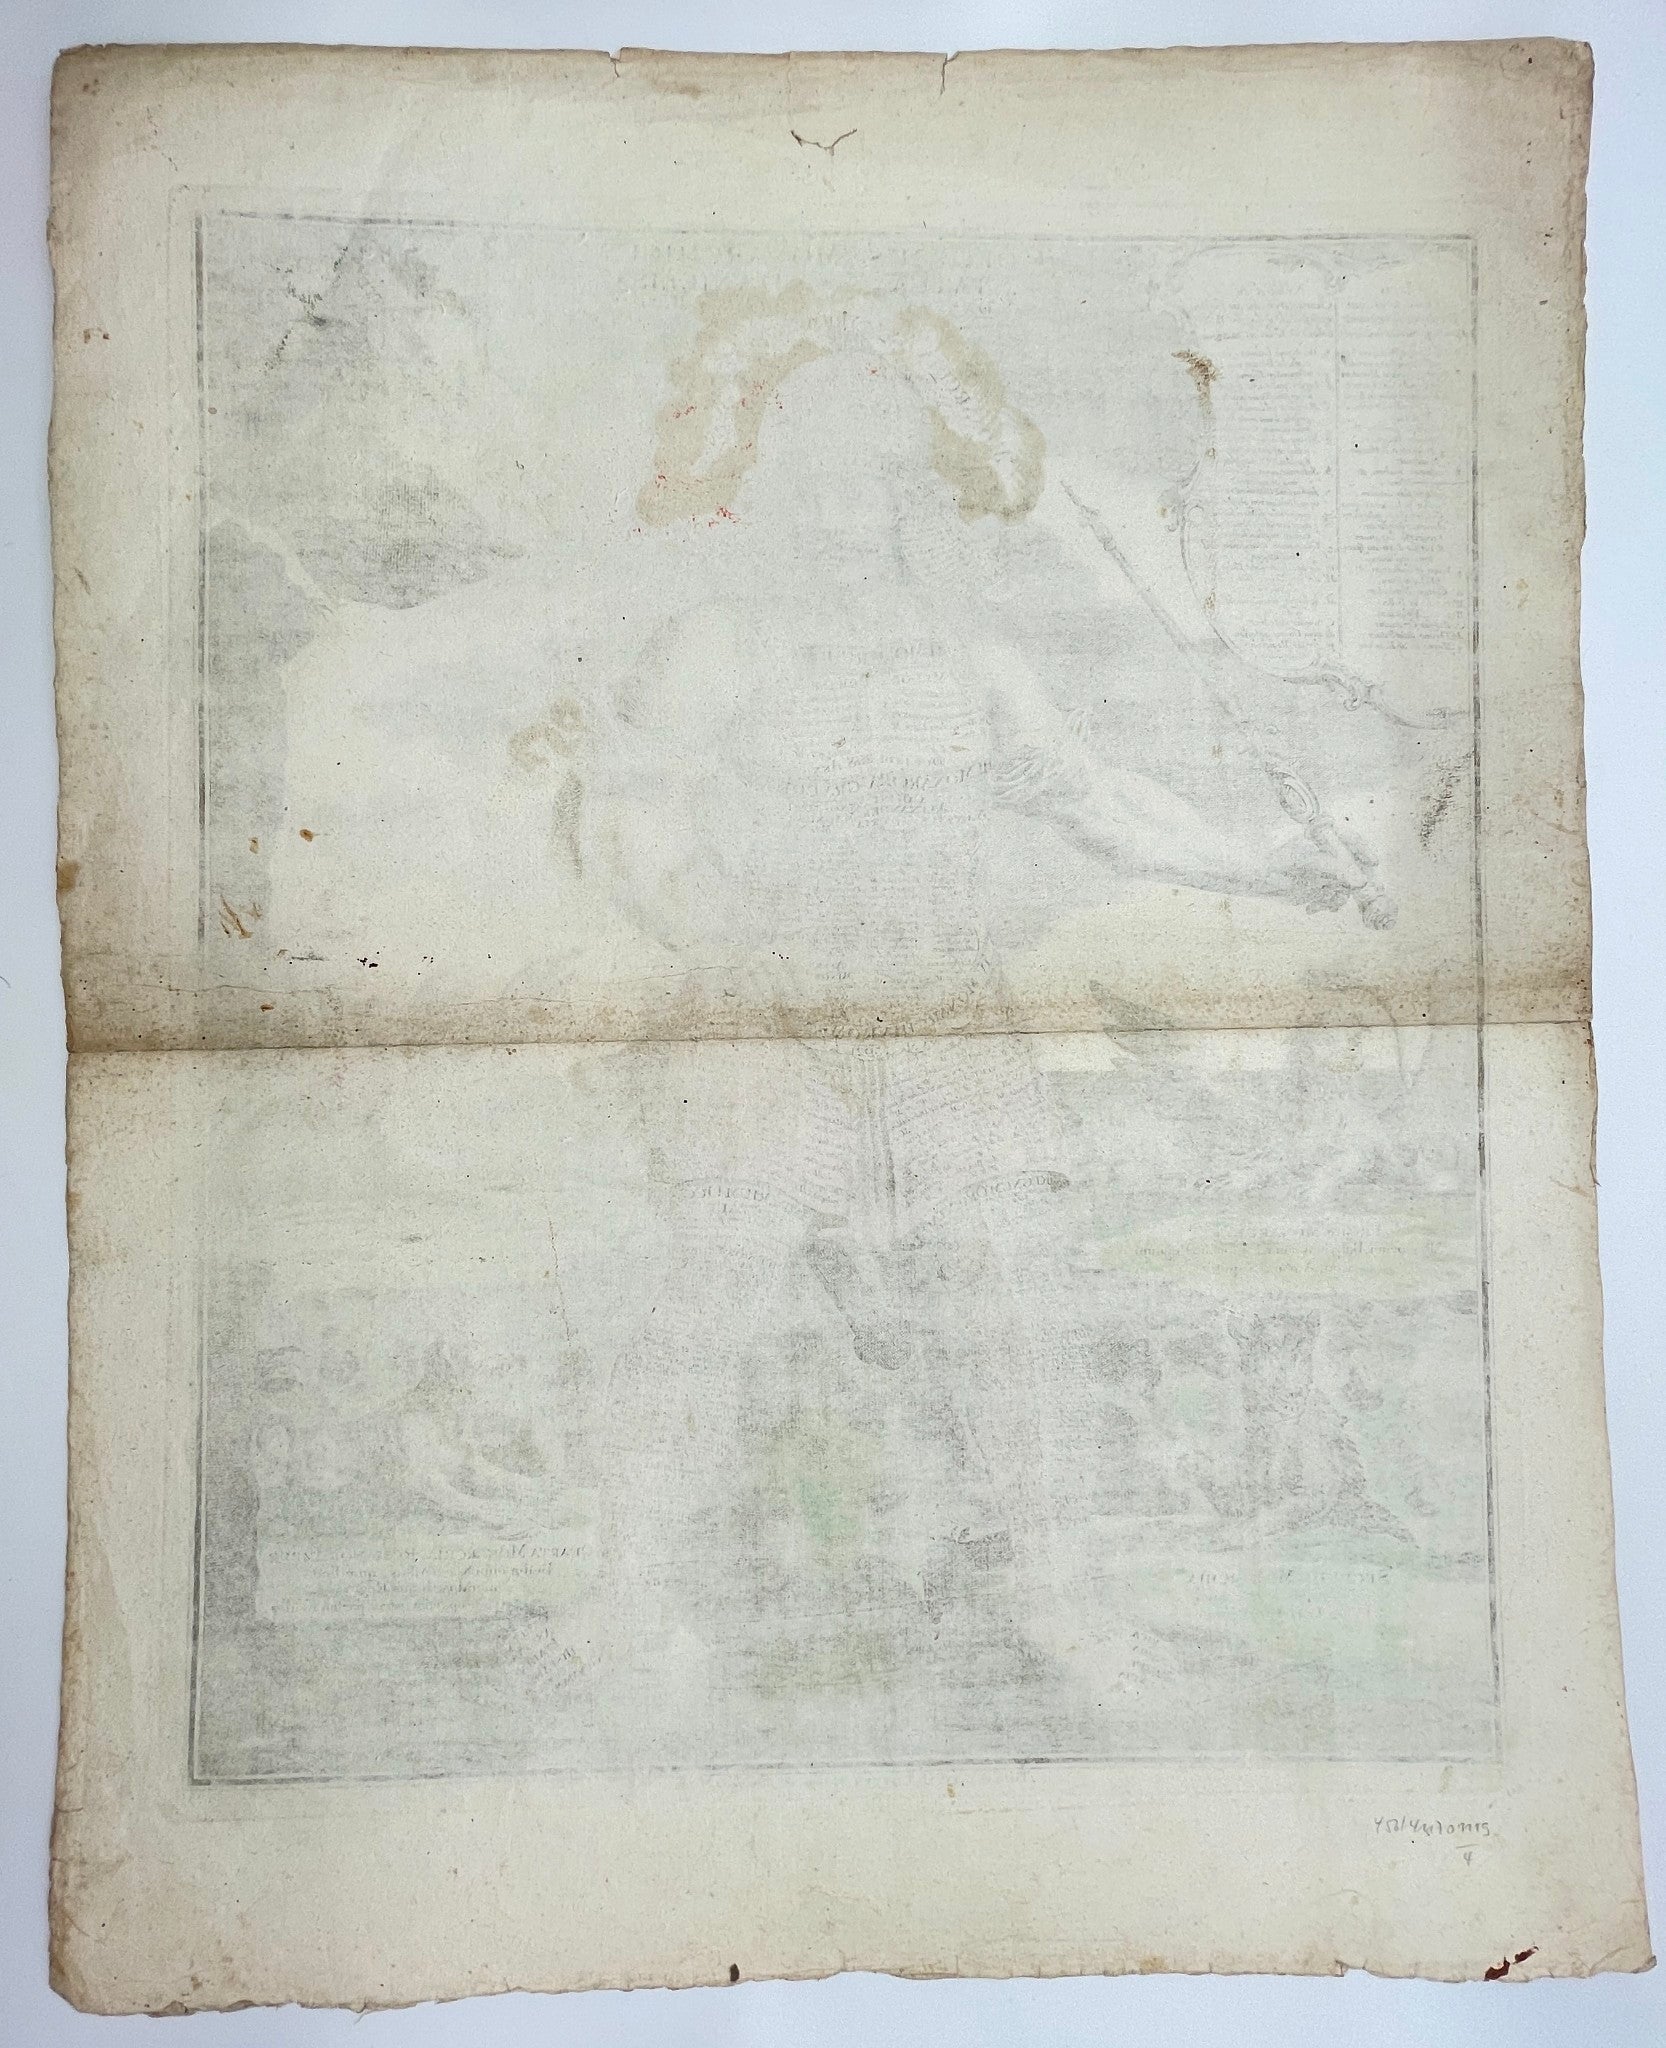 Antique Map Print - Colossus Monarchic. Statua Danielis SEUTTER Matthaus 1707 - Dahlströms Fine Art